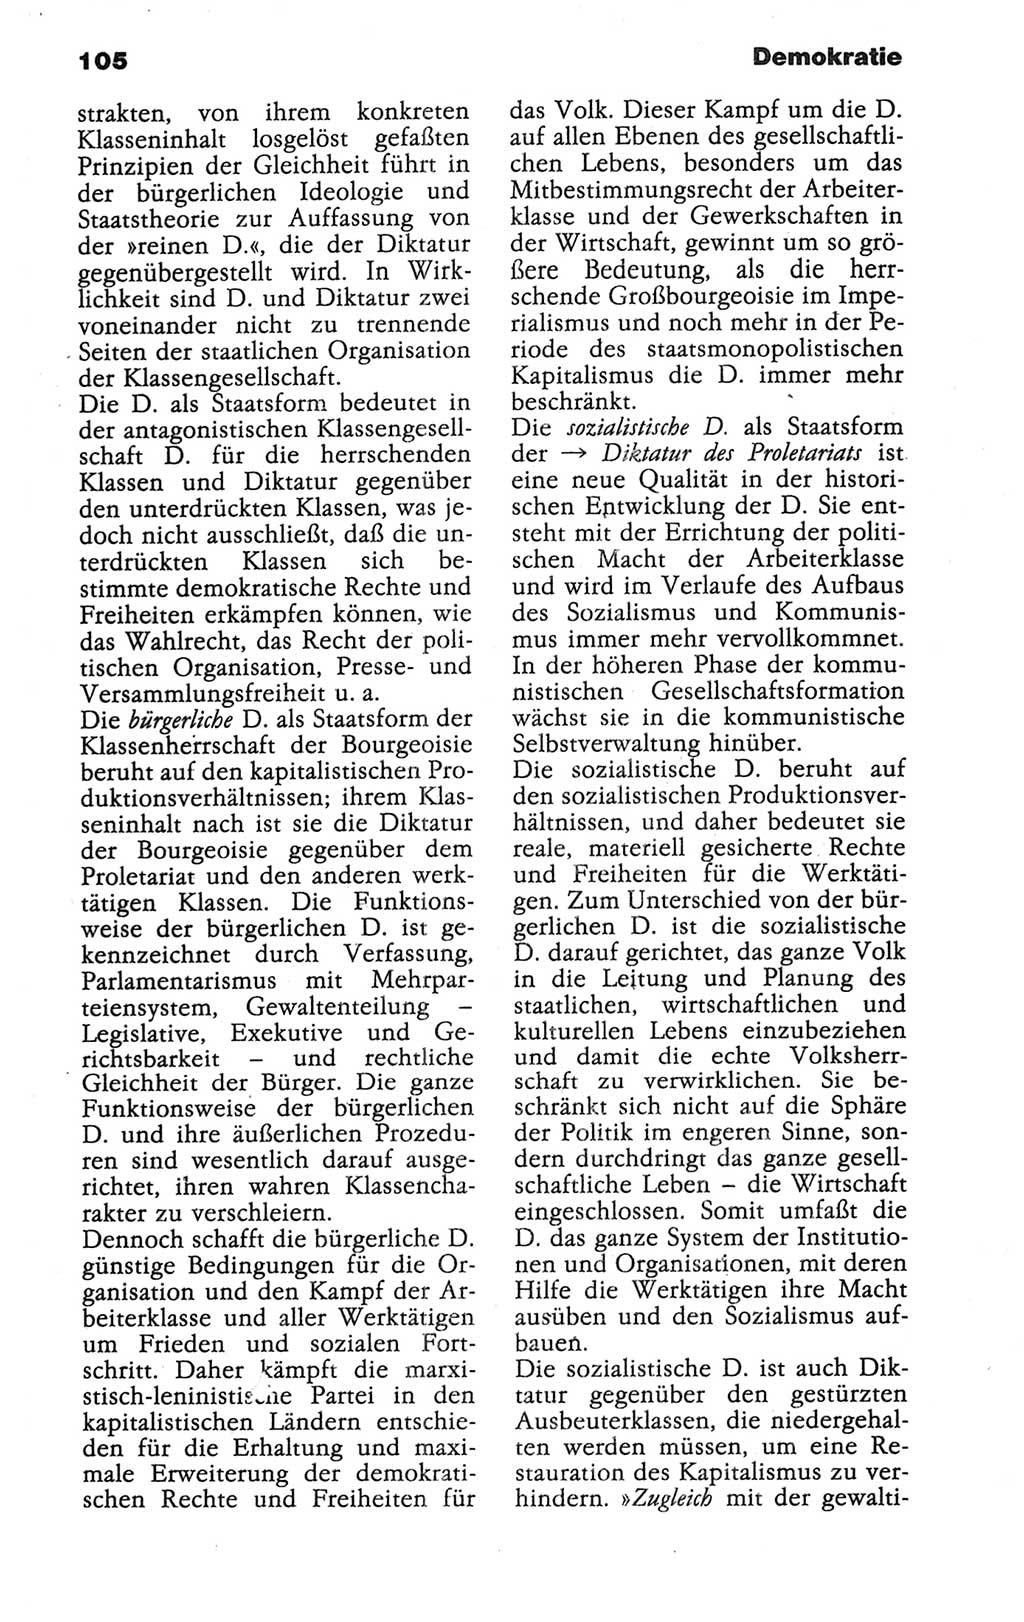 Wörterbuch der marxistisch-leninistischen Philosophie [Deutsche Demokratische Republik (DDR)] 1986, Seite 105 (Wb. ML Phil. DDR 1986, S. 105)